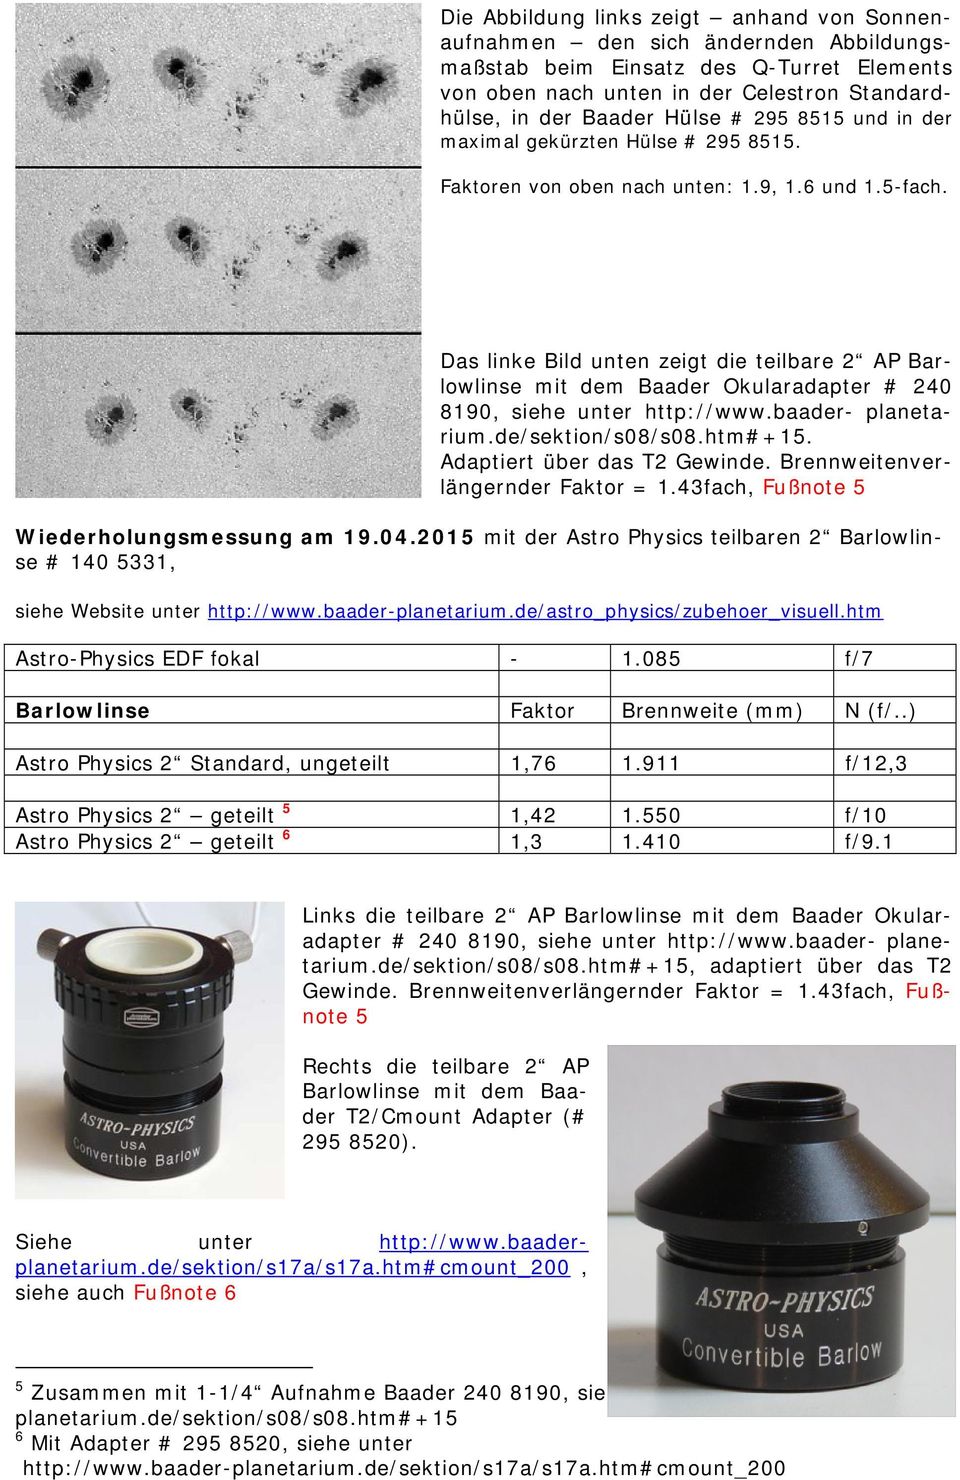 Das linke Bild unten zeigt die teilbare 2 AP Barlowlinse mit dem Baader Okularadapter # 240 8190, siehe unter http://www.baader- planetarium.de/sektion/s08/s08.htm#+15. Adaptiert über das T2 Gewinde.